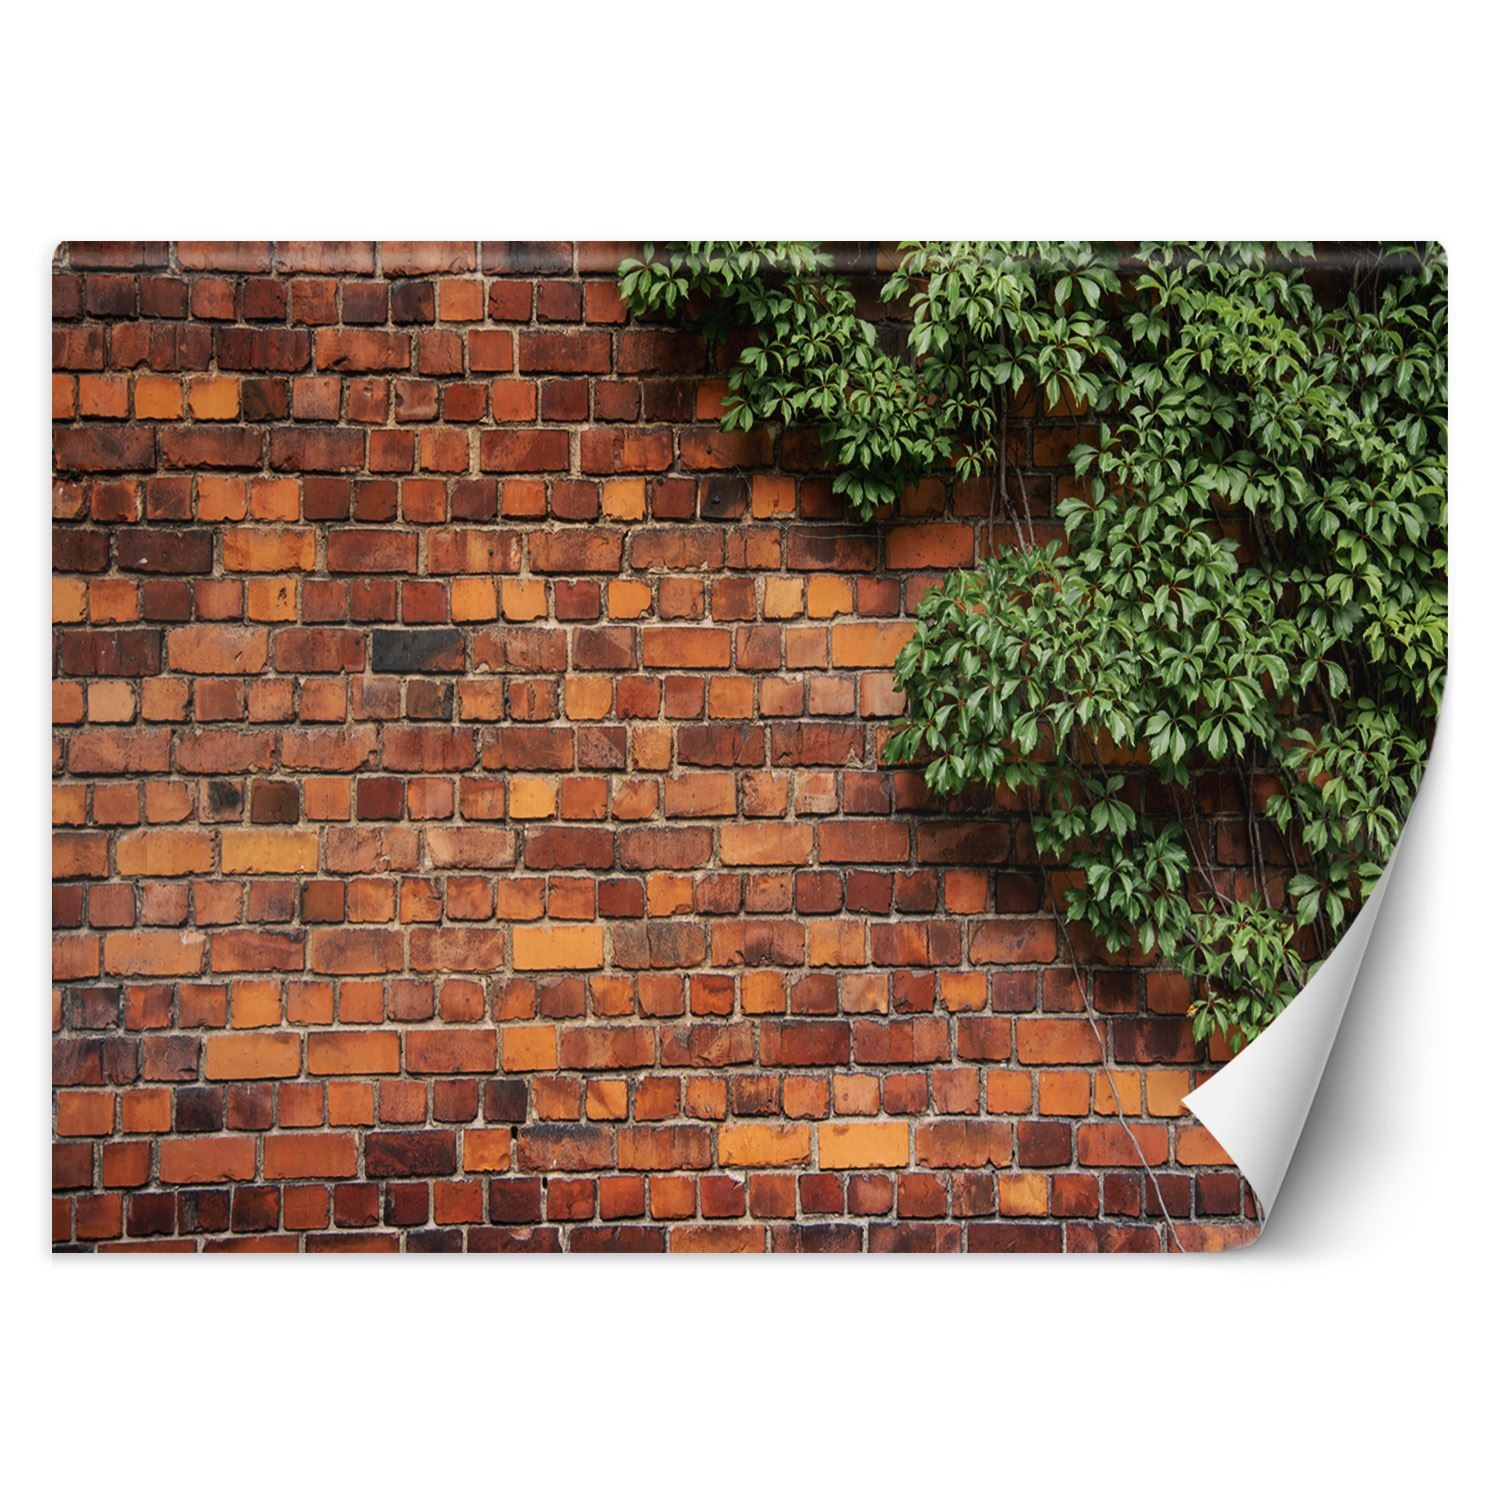 Trend24 – Behang – Bakstenen Muur Met Klimplant – Vliesbehang – Behang Woonkamer – Fotobehang – 450x315x2 cm – Incl. behanglijm